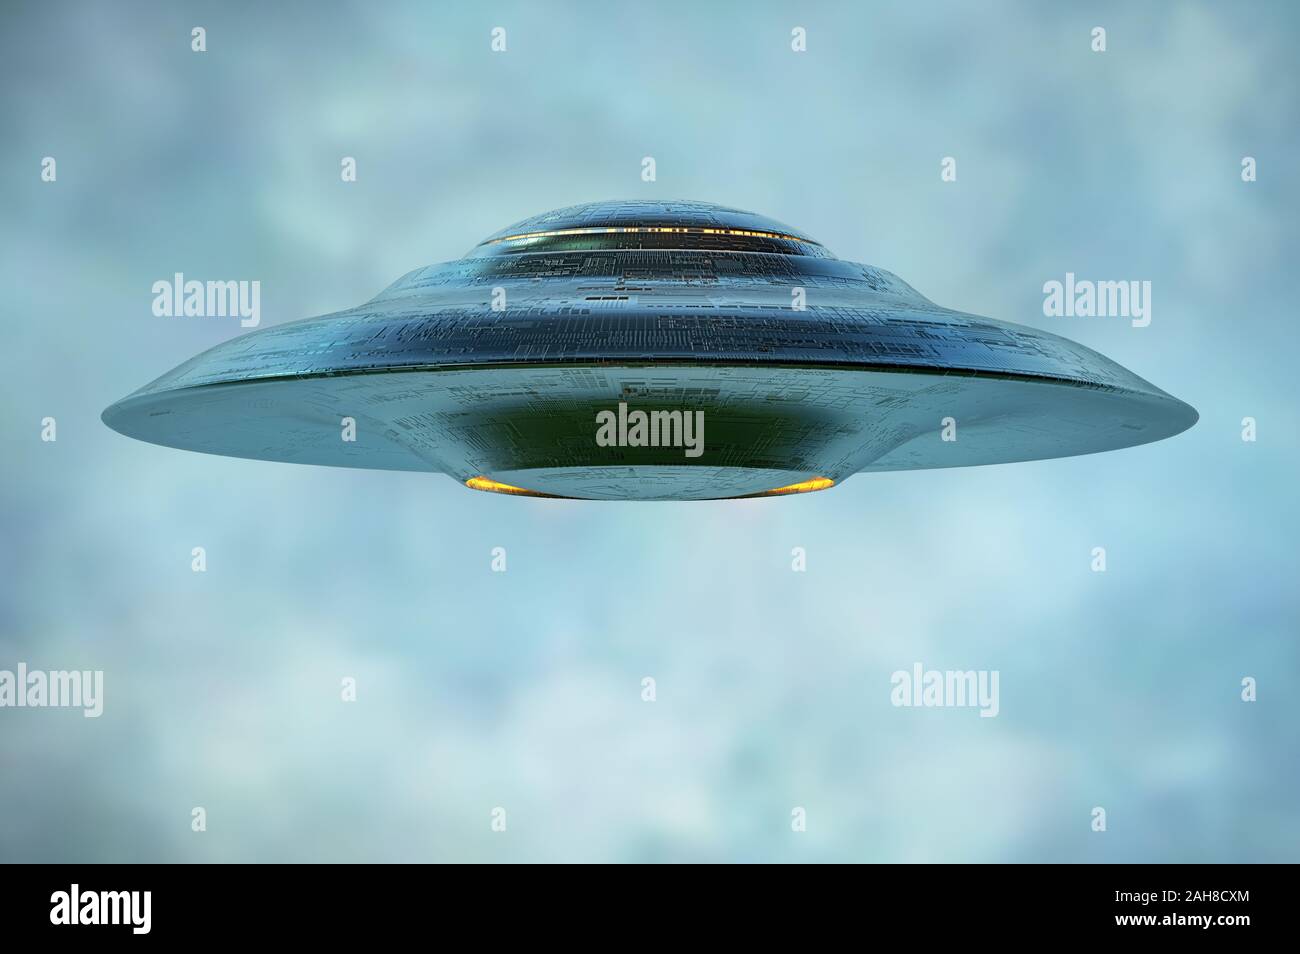 Unbekanntes Flugobjekt - UFO. Science Fiction Bild Konzept der Ufologie und das Leben des Planeten Erde. Beschneidungspfad enthalten. Stockfoto